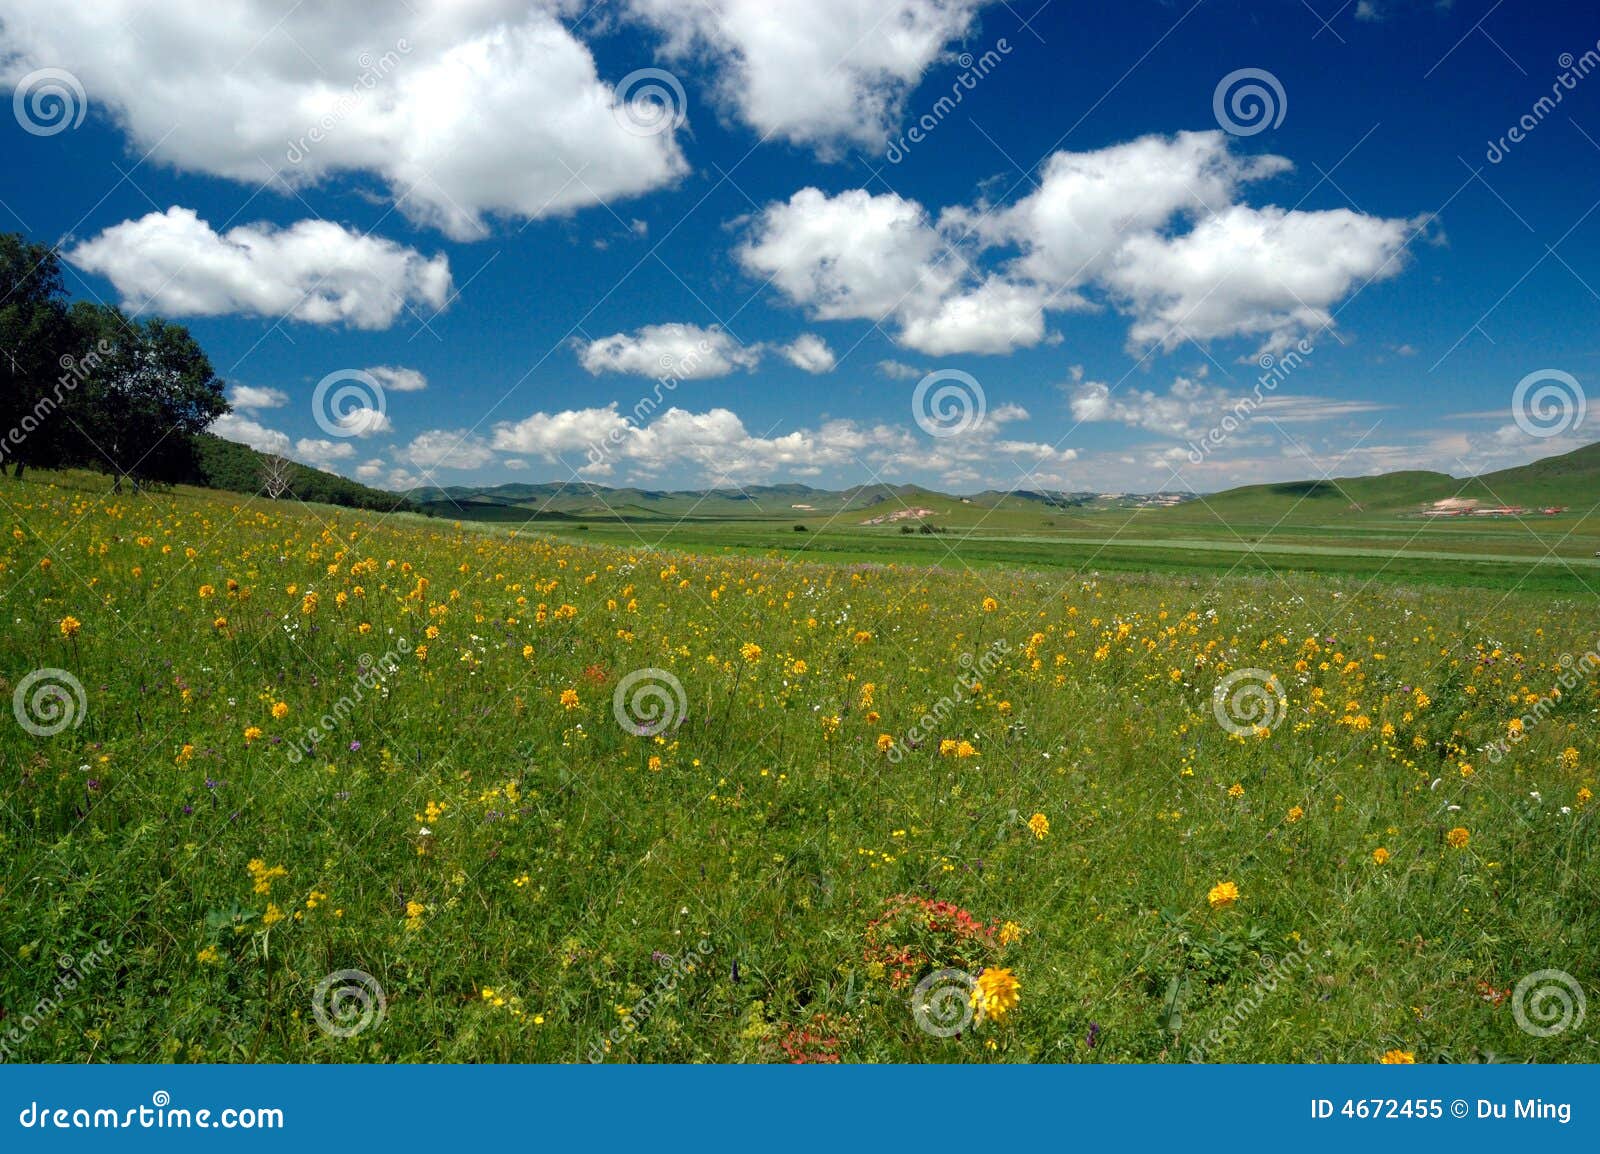 grassland summer